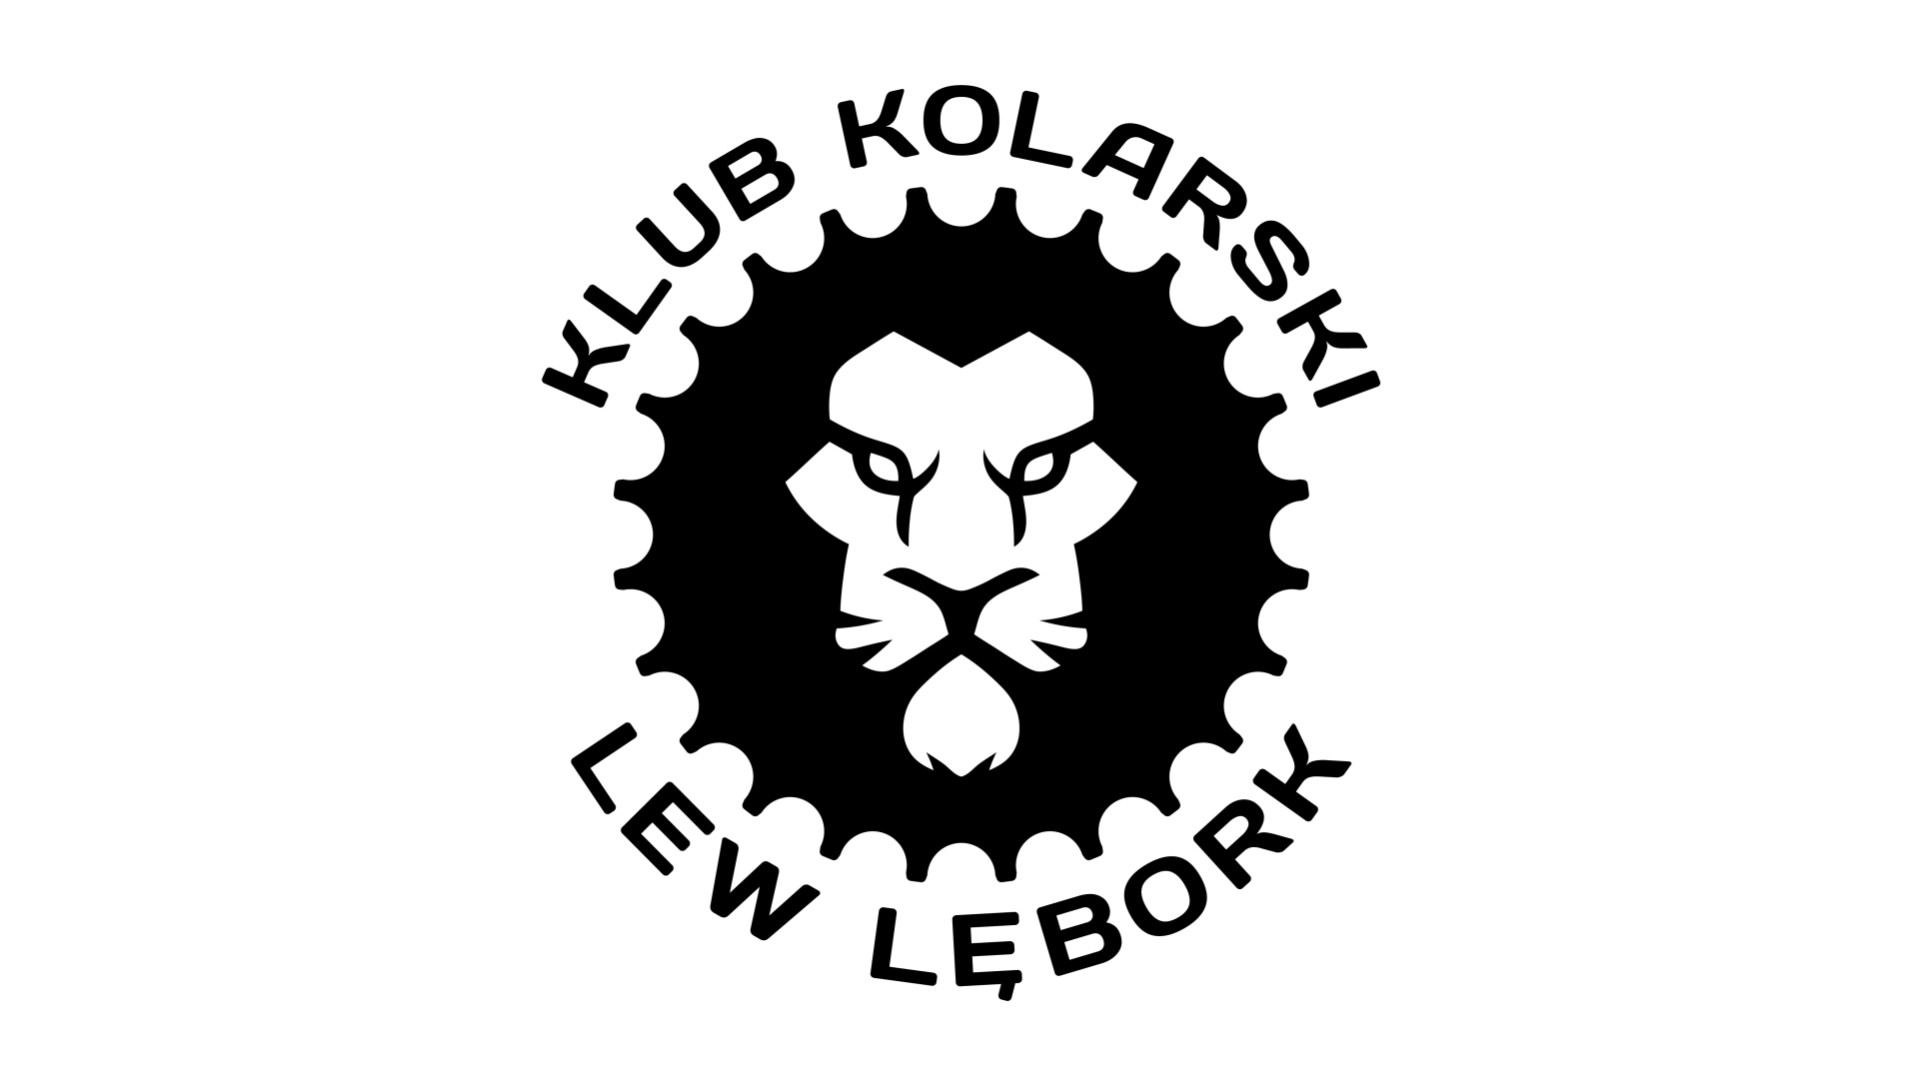 Poznajmy się – Klub Kolarski Lew Lębork